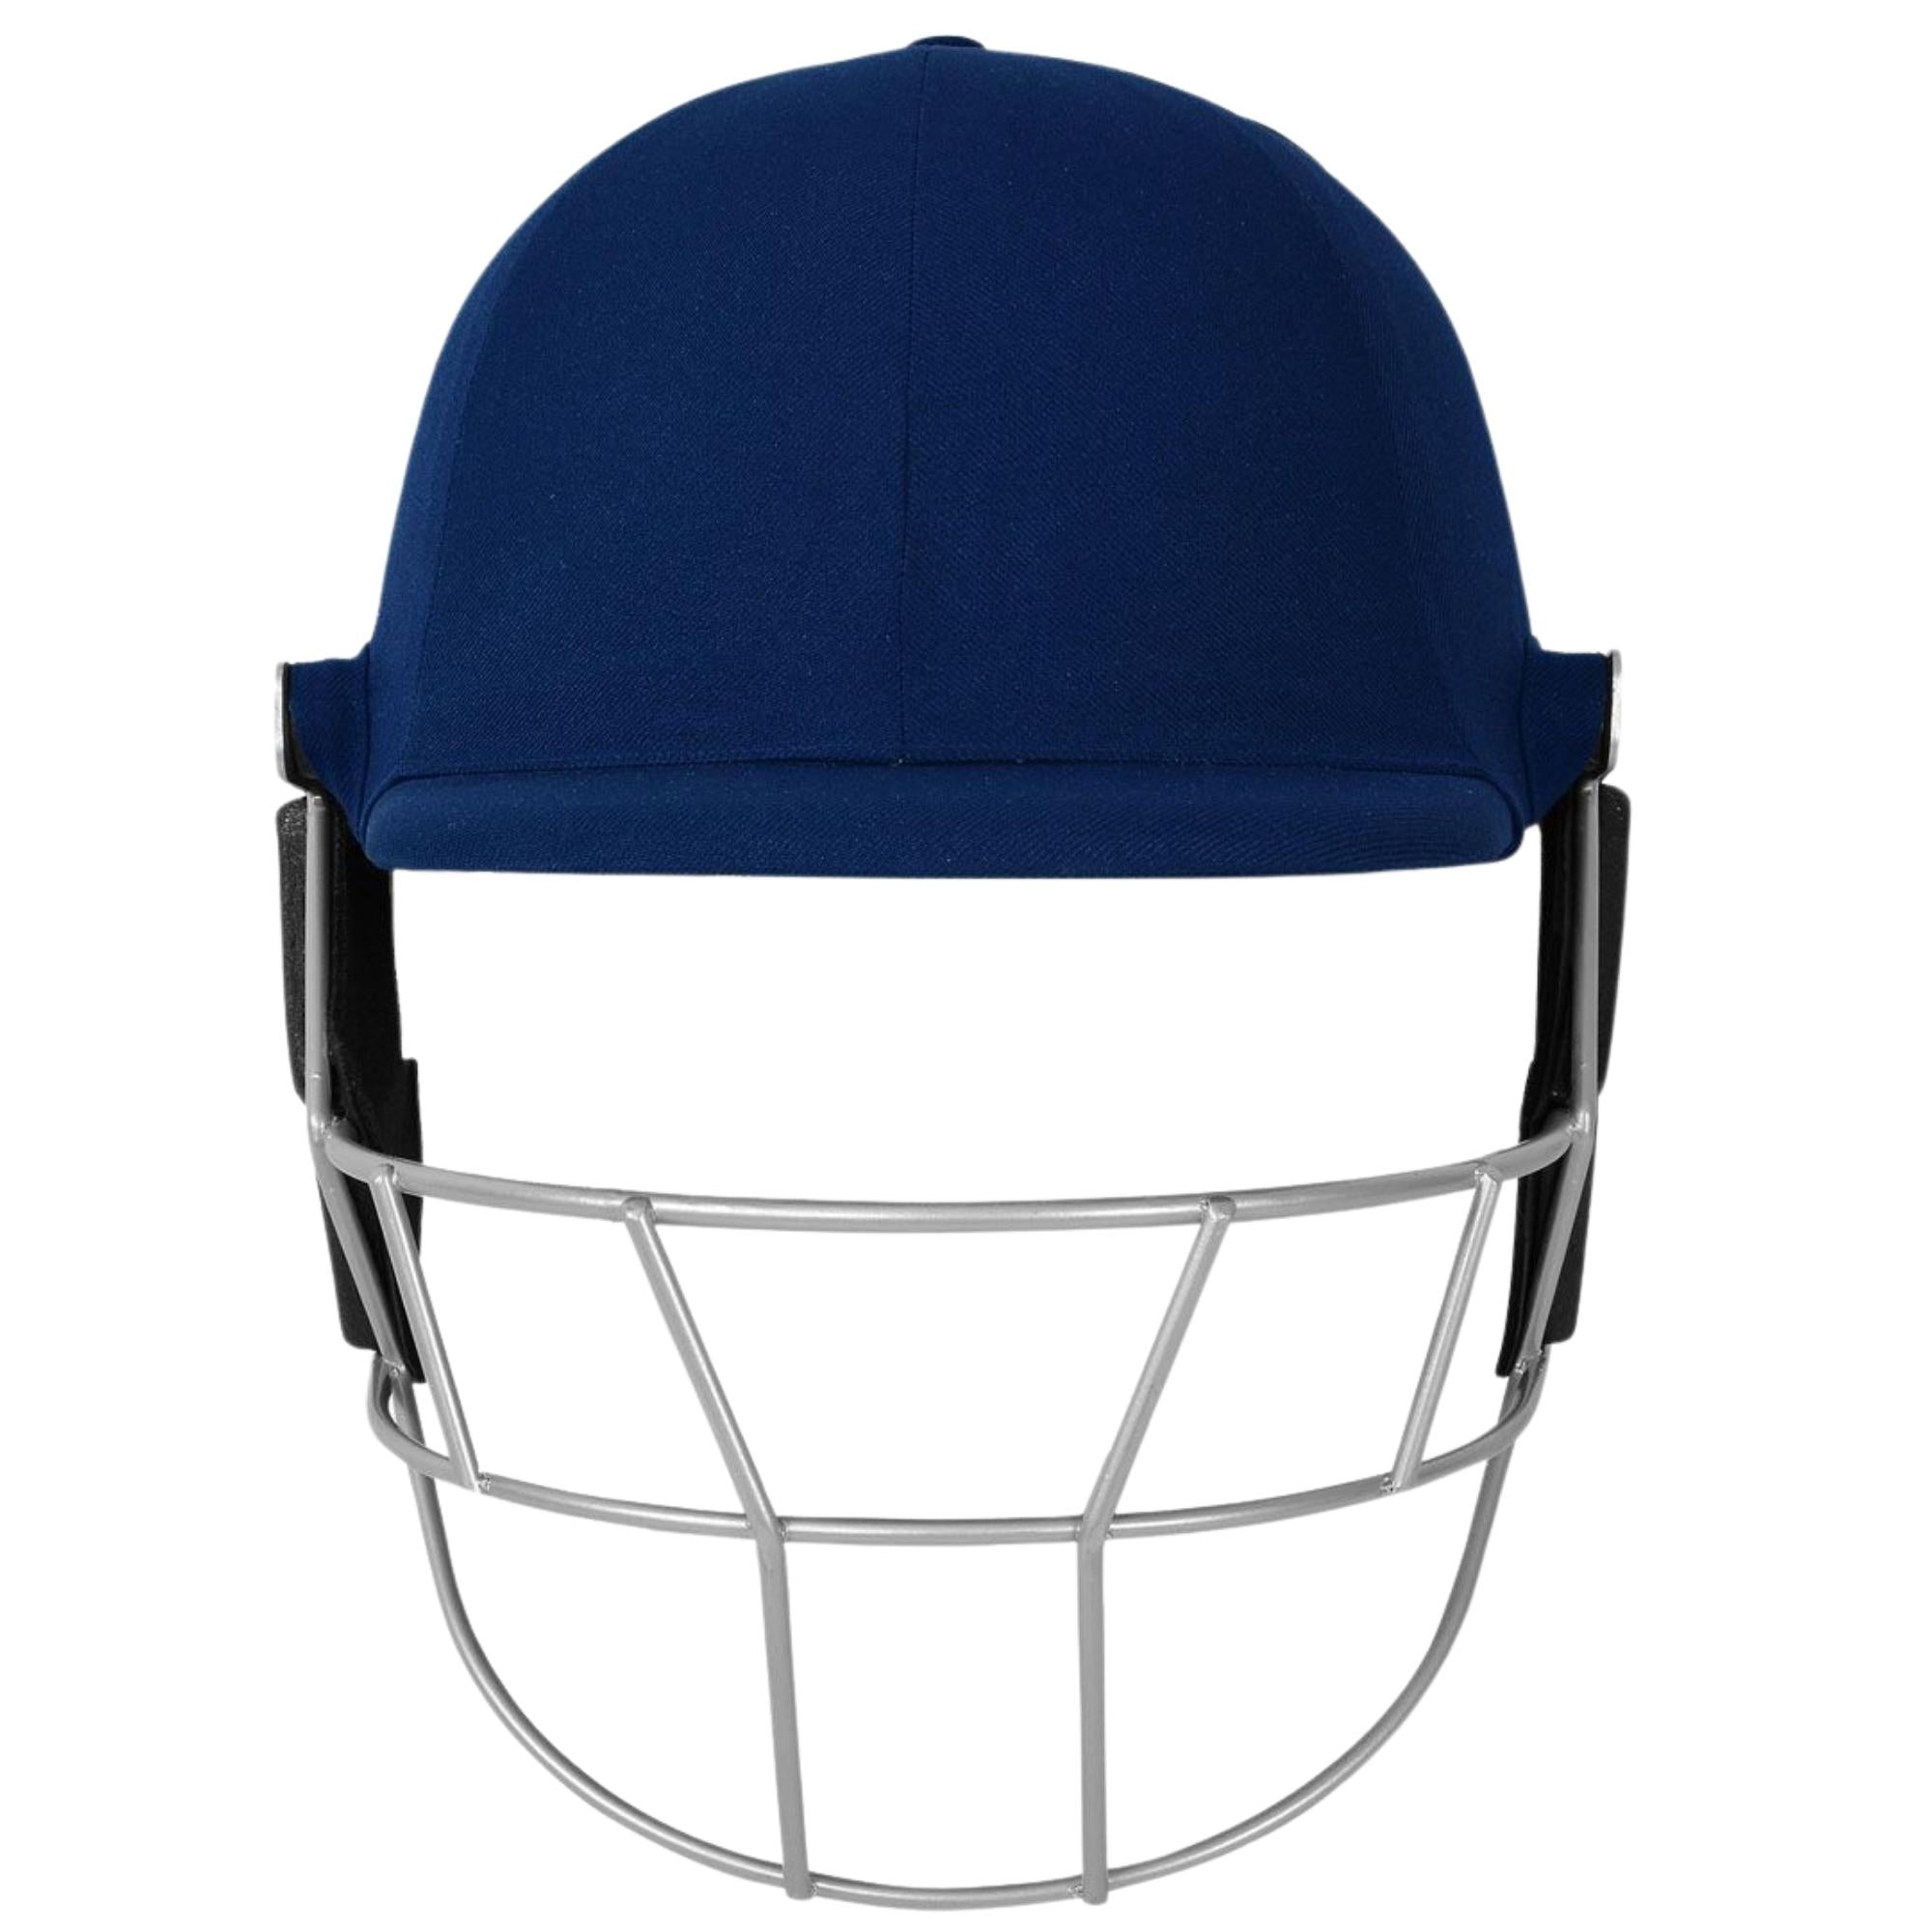 DSC Scud Lite Titanium Cricket Helmet